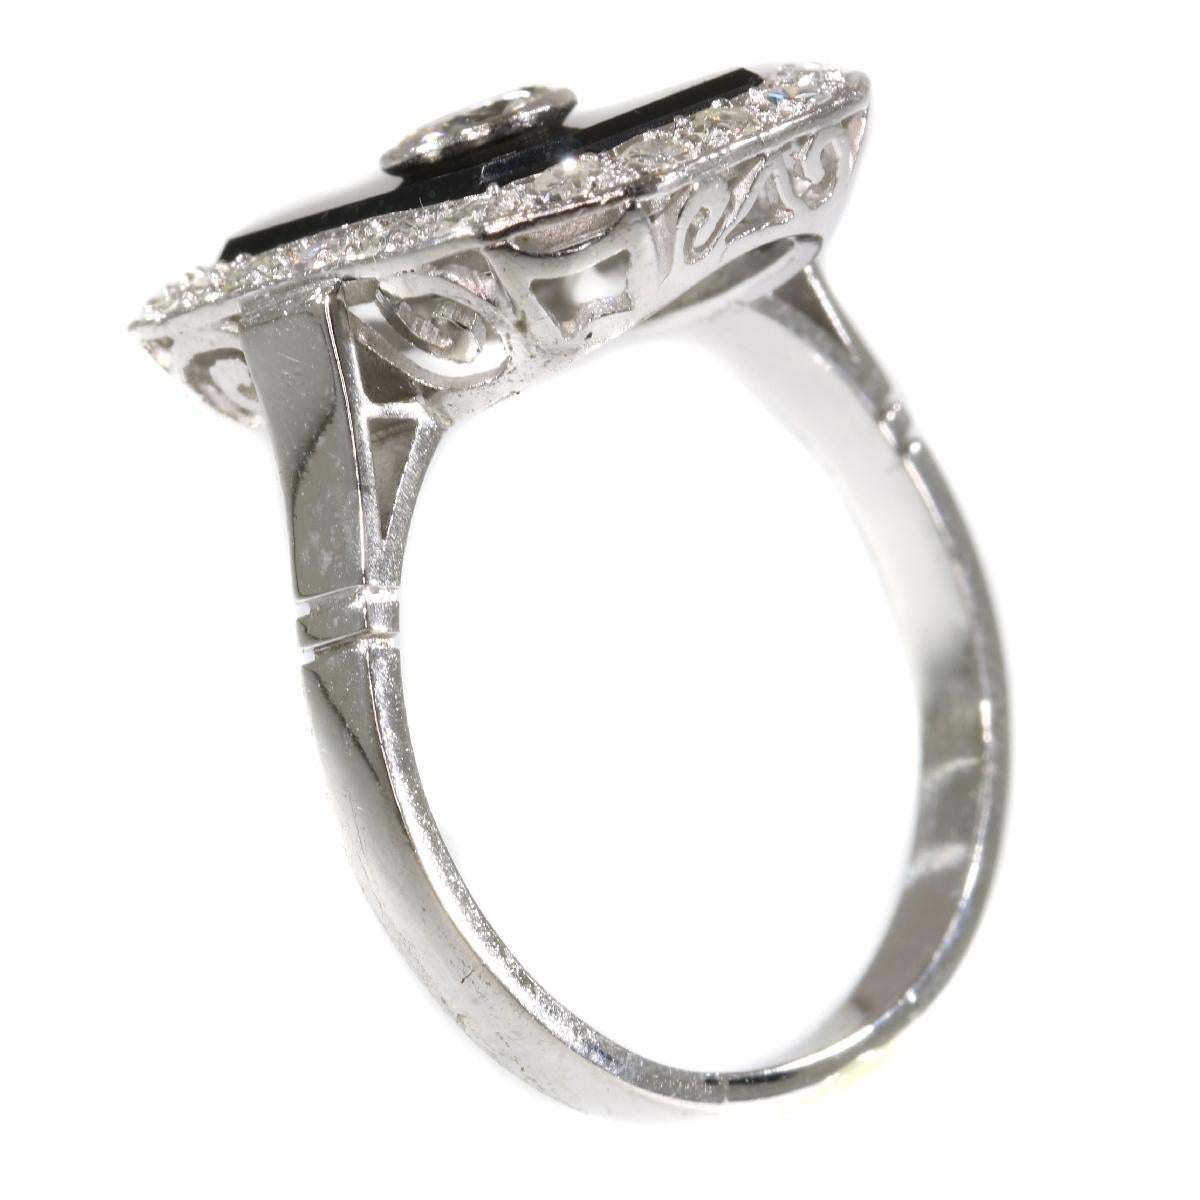 Vintage Platinum Art Deco Style Diamond and Onyx Ring from the 1950s für Damen oder Herren